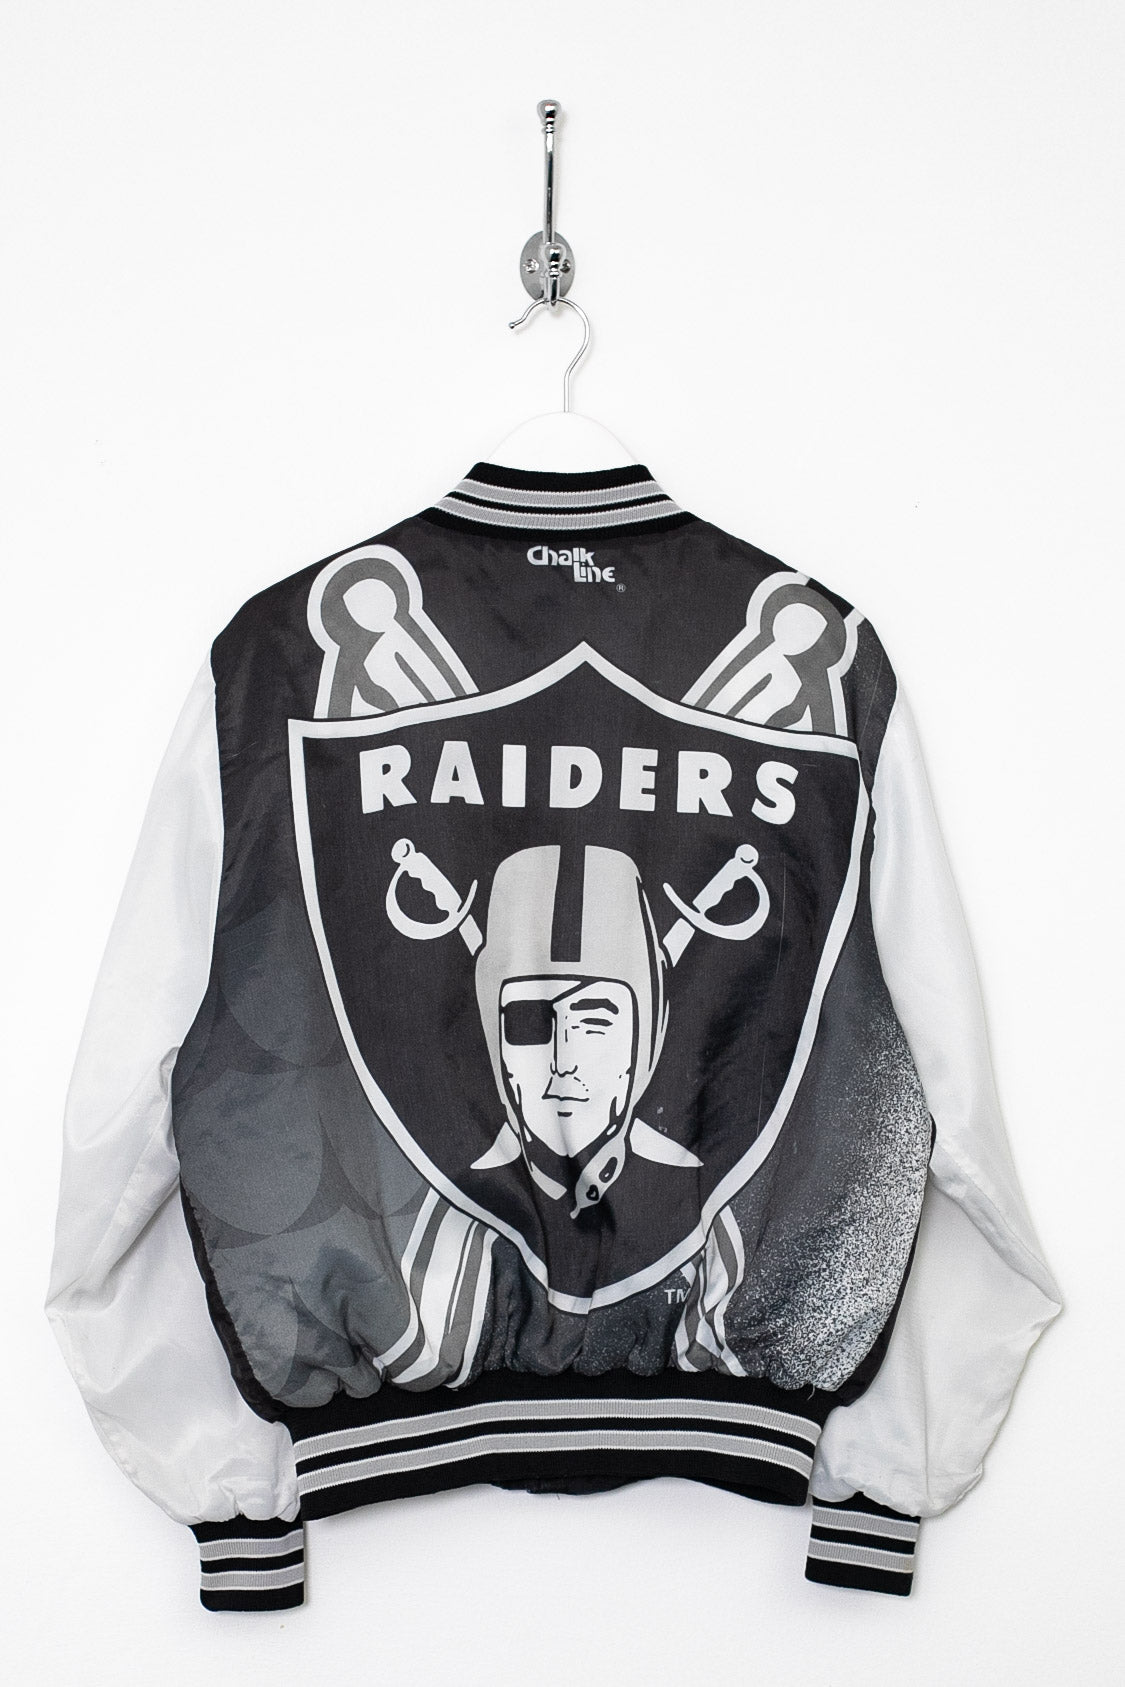 Rare 90s Chalk Line NFL Raiders Jacket (S) – Stocked Vintage